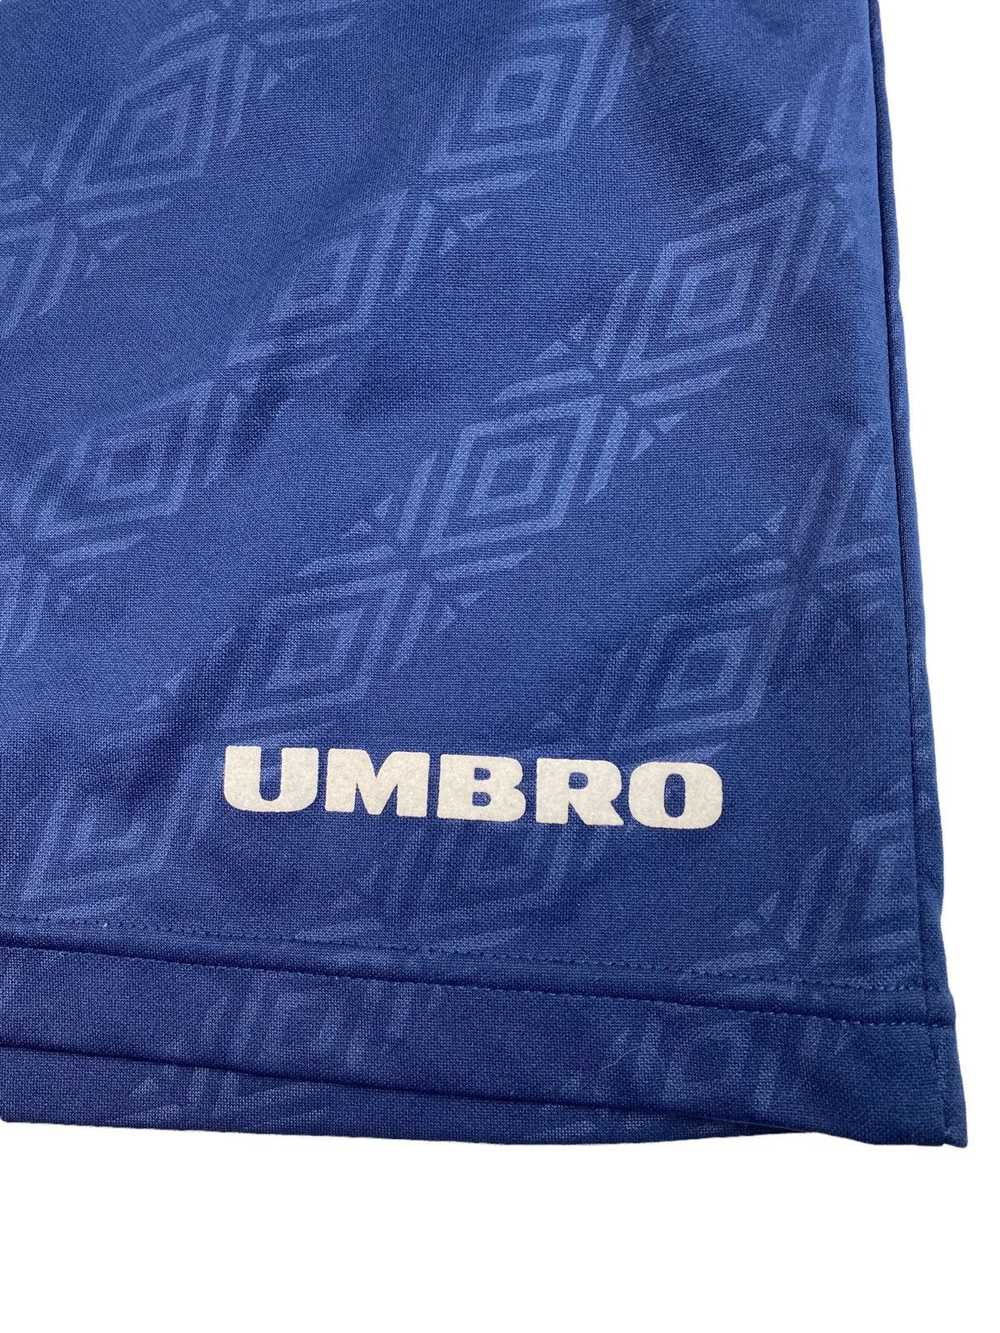 Umbro × Vintage Mens Vintage Umbro Monogram Short… - image 4